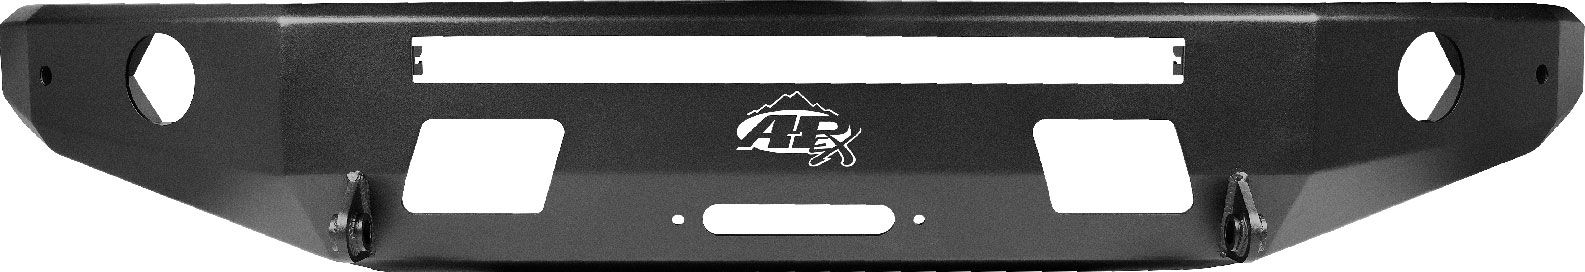 All-Pro Off-Road 3rd Gen Front Aluminum Apex Bumper in Black 2014-2021